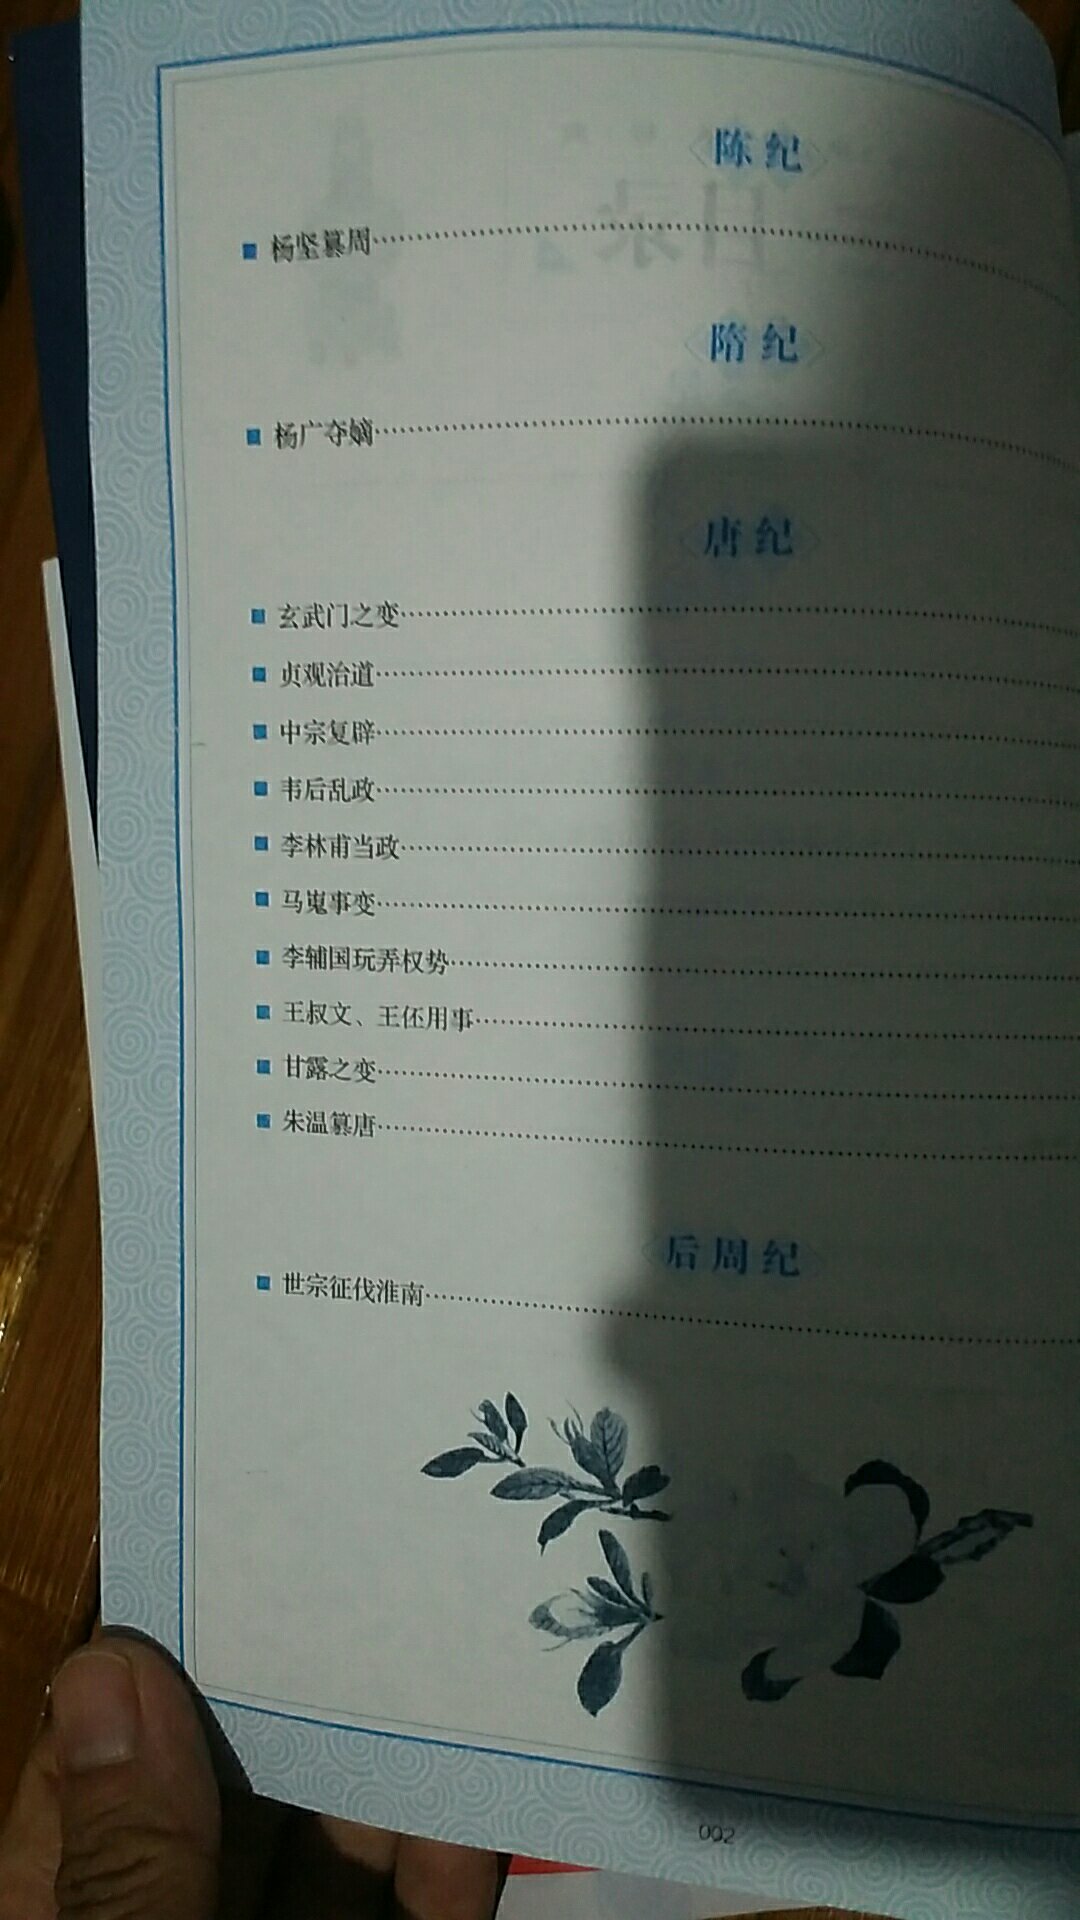 是一位教初中语文的朋友推荐买的，她说平时考试有很多文章出自这里边。